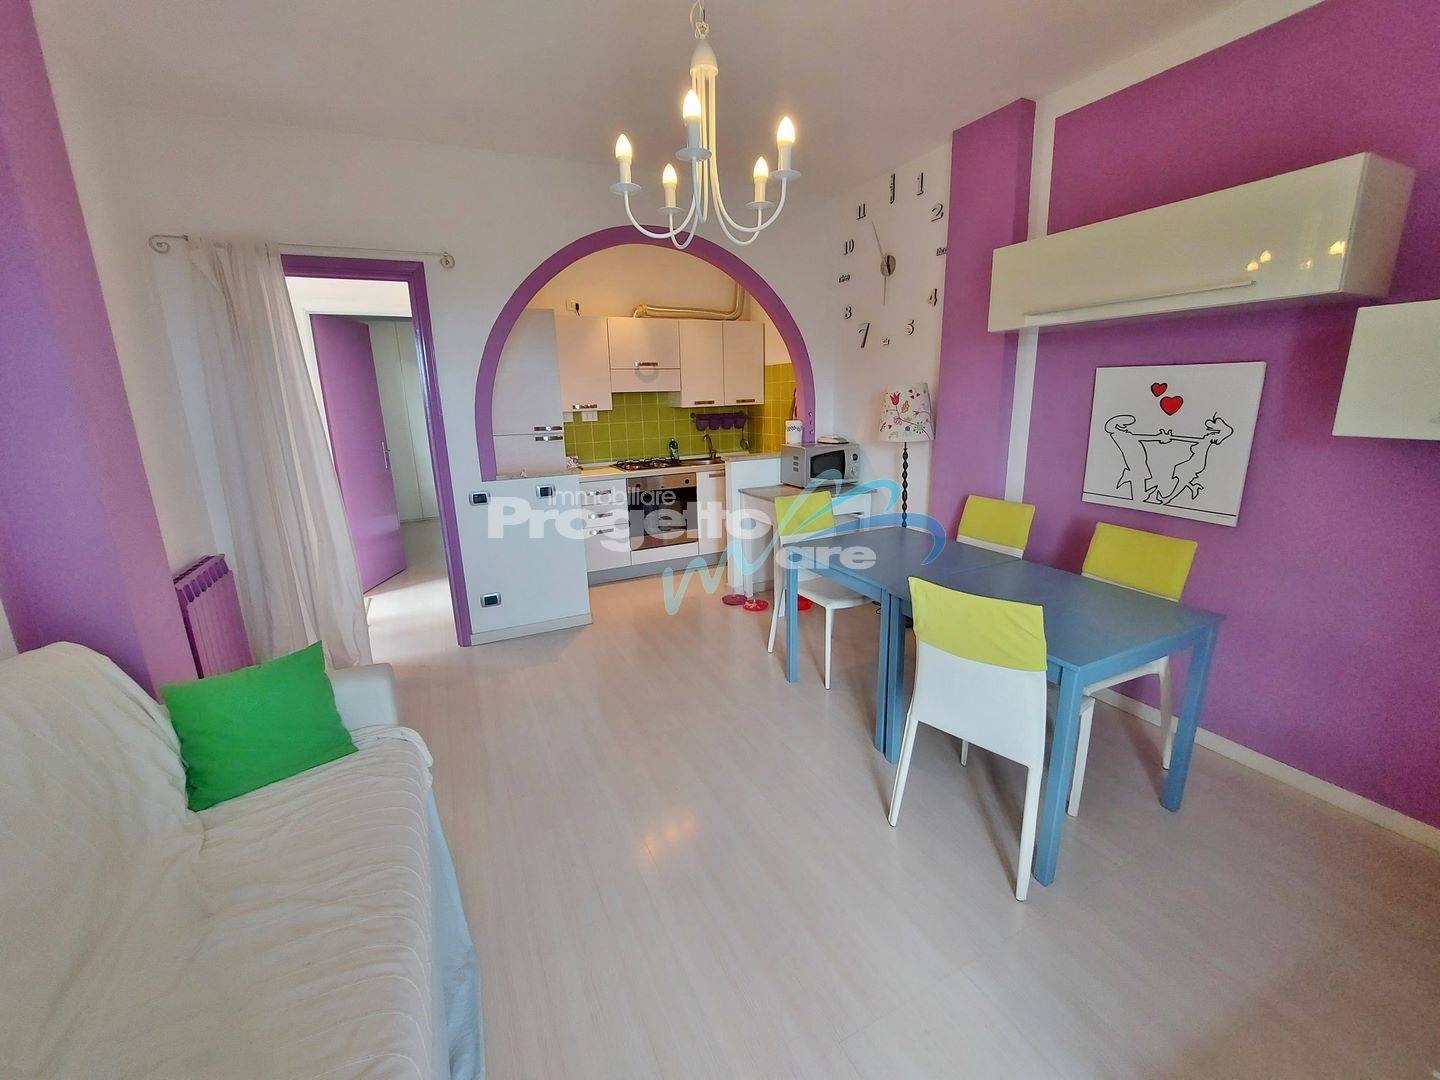 Appartamento in vendita a Tovo San Giacomo, 2 locali, zona ni, prezzo € 120.000 | PortaleAgenzieImmobiliari.it